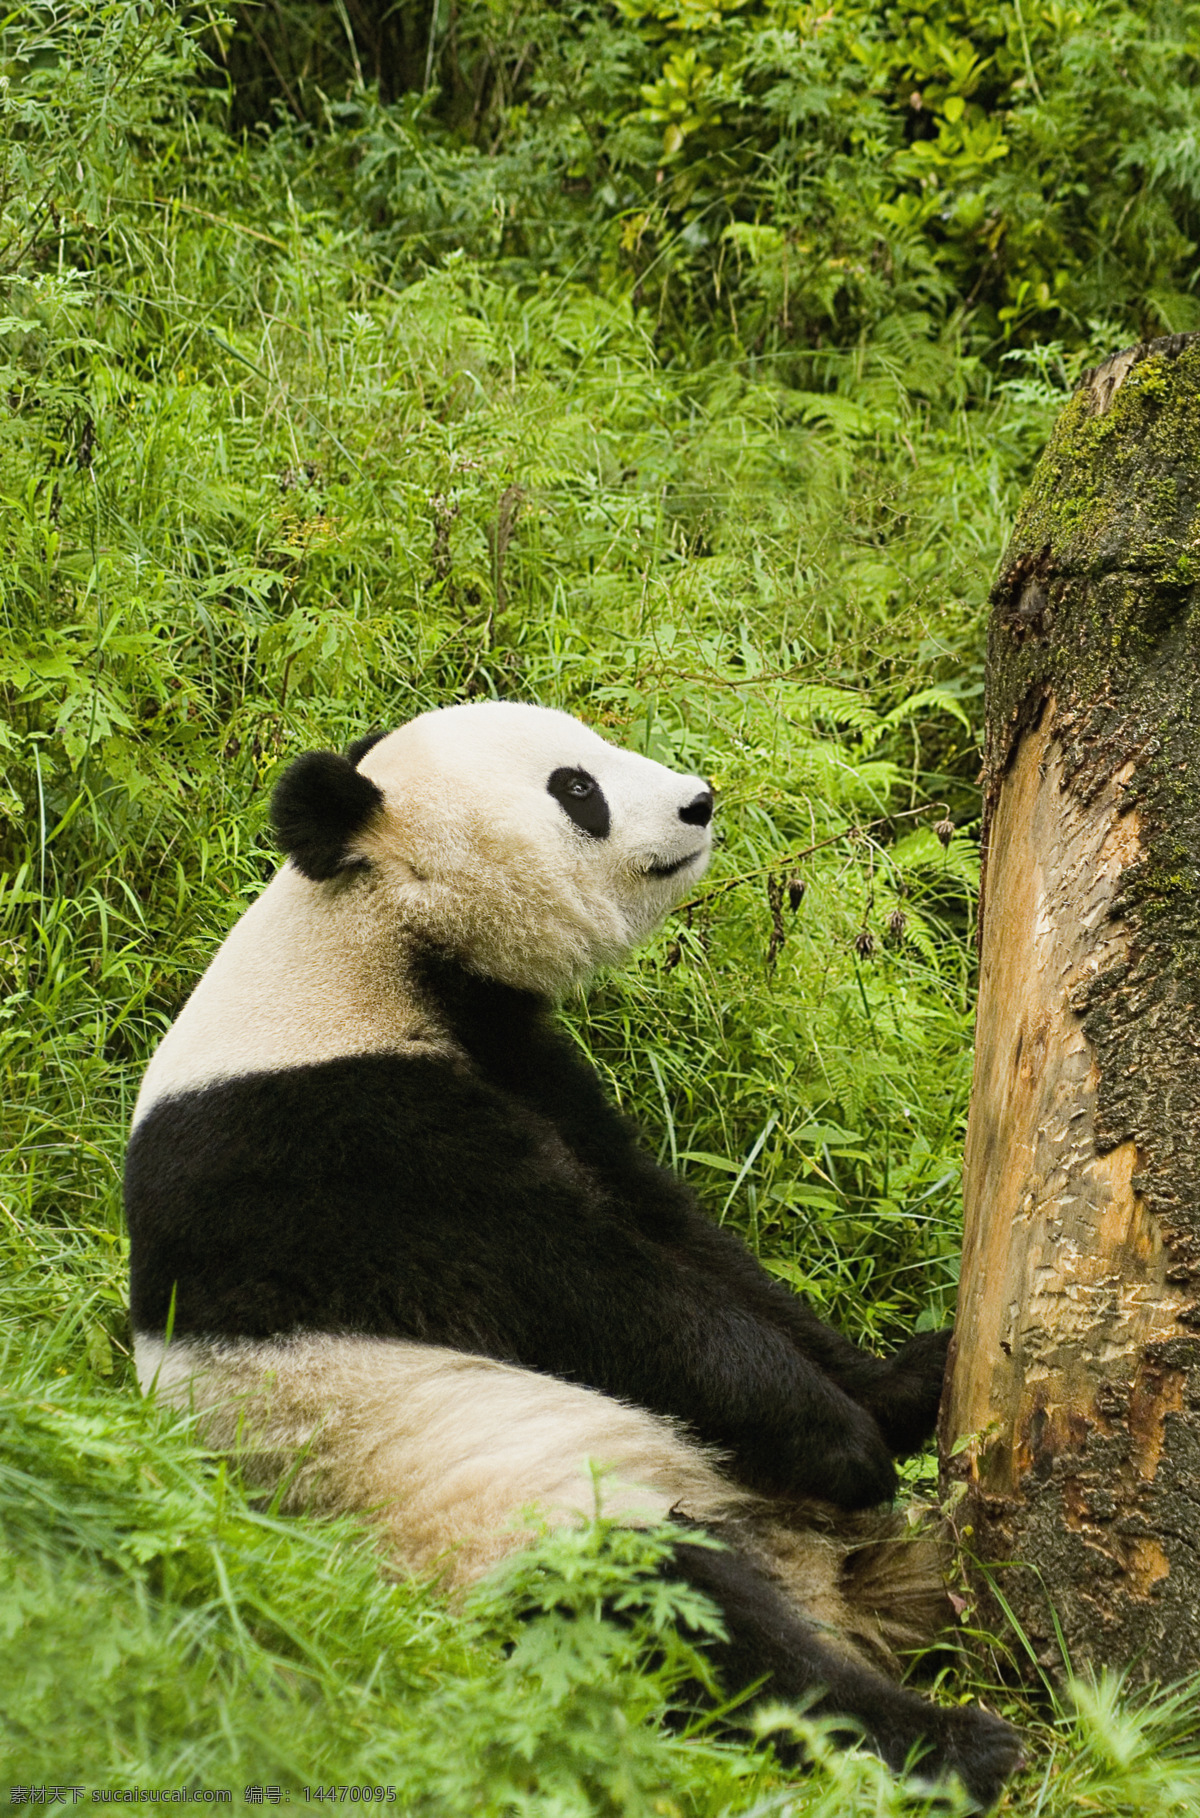 可爱 大熊猫 脯乳动物 保护动物 熊 国宝 野生动物 动物世界 生物世界 摄影图 高清图片 猫咪图片